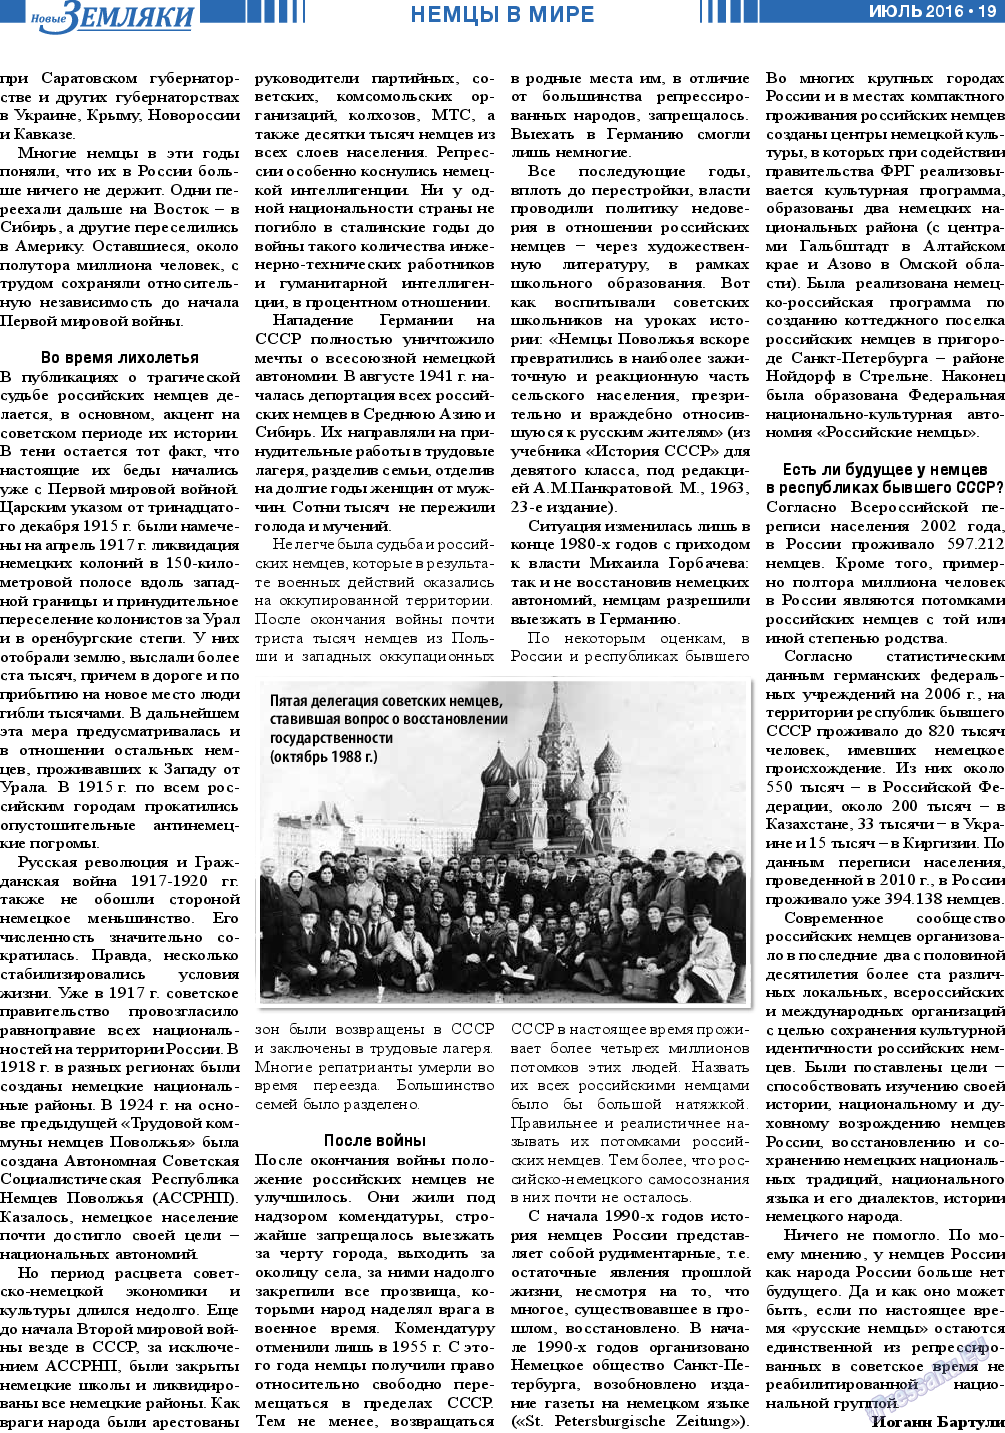 Новые Земляки, газета. 2016 №7 стр.19